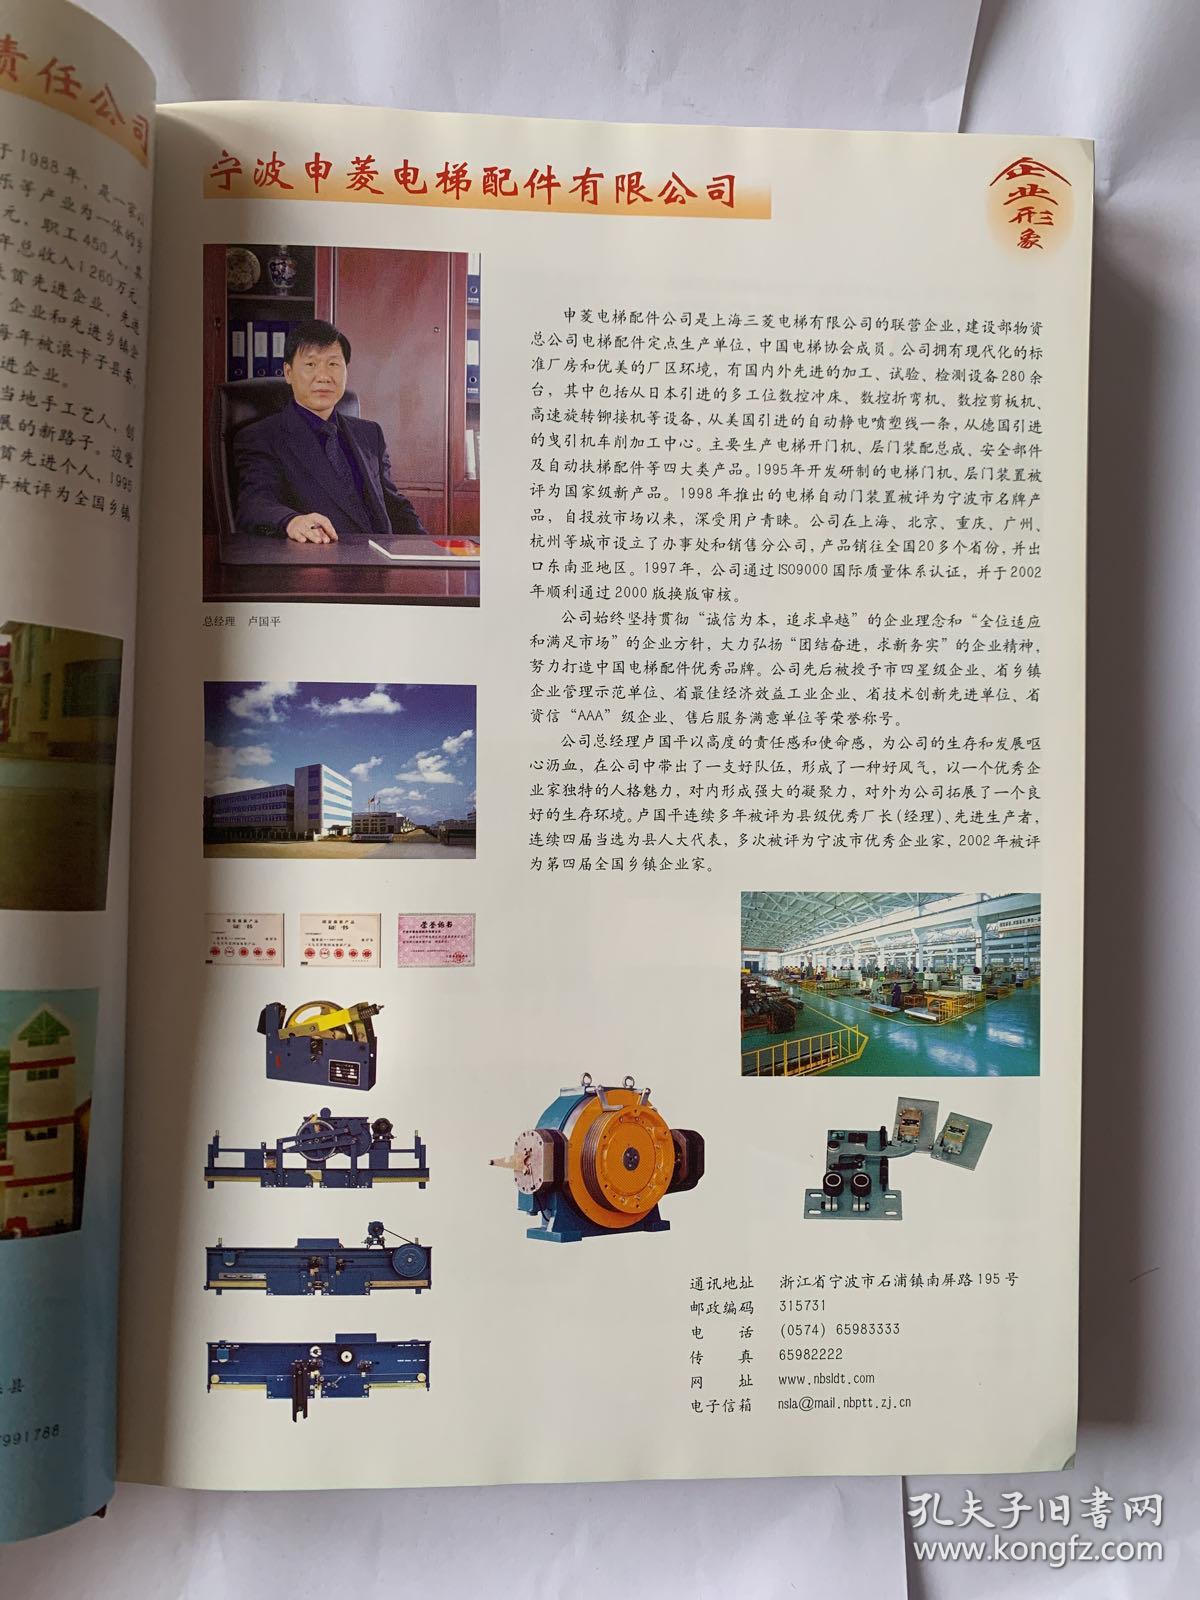 中国乡镇企业年鉴2003